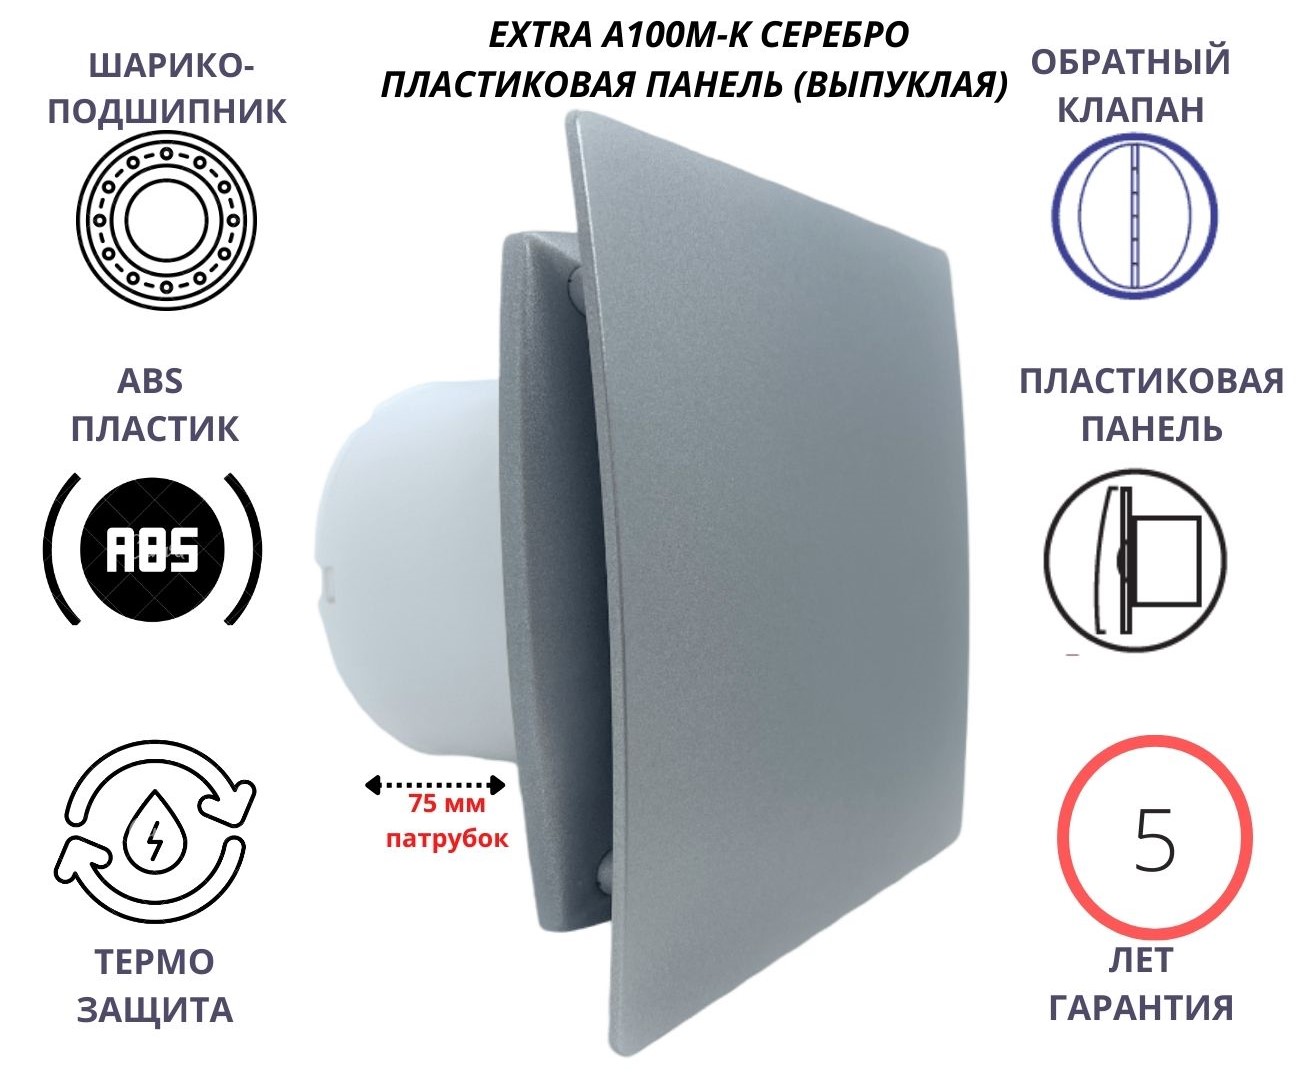 Вентилятор D100мм с пластиковой серебристой панелью EXTRA A100М-K, Сербия вентилятор с таймером и плоской пластиковой панелью extra100m t pl сербия камень беж